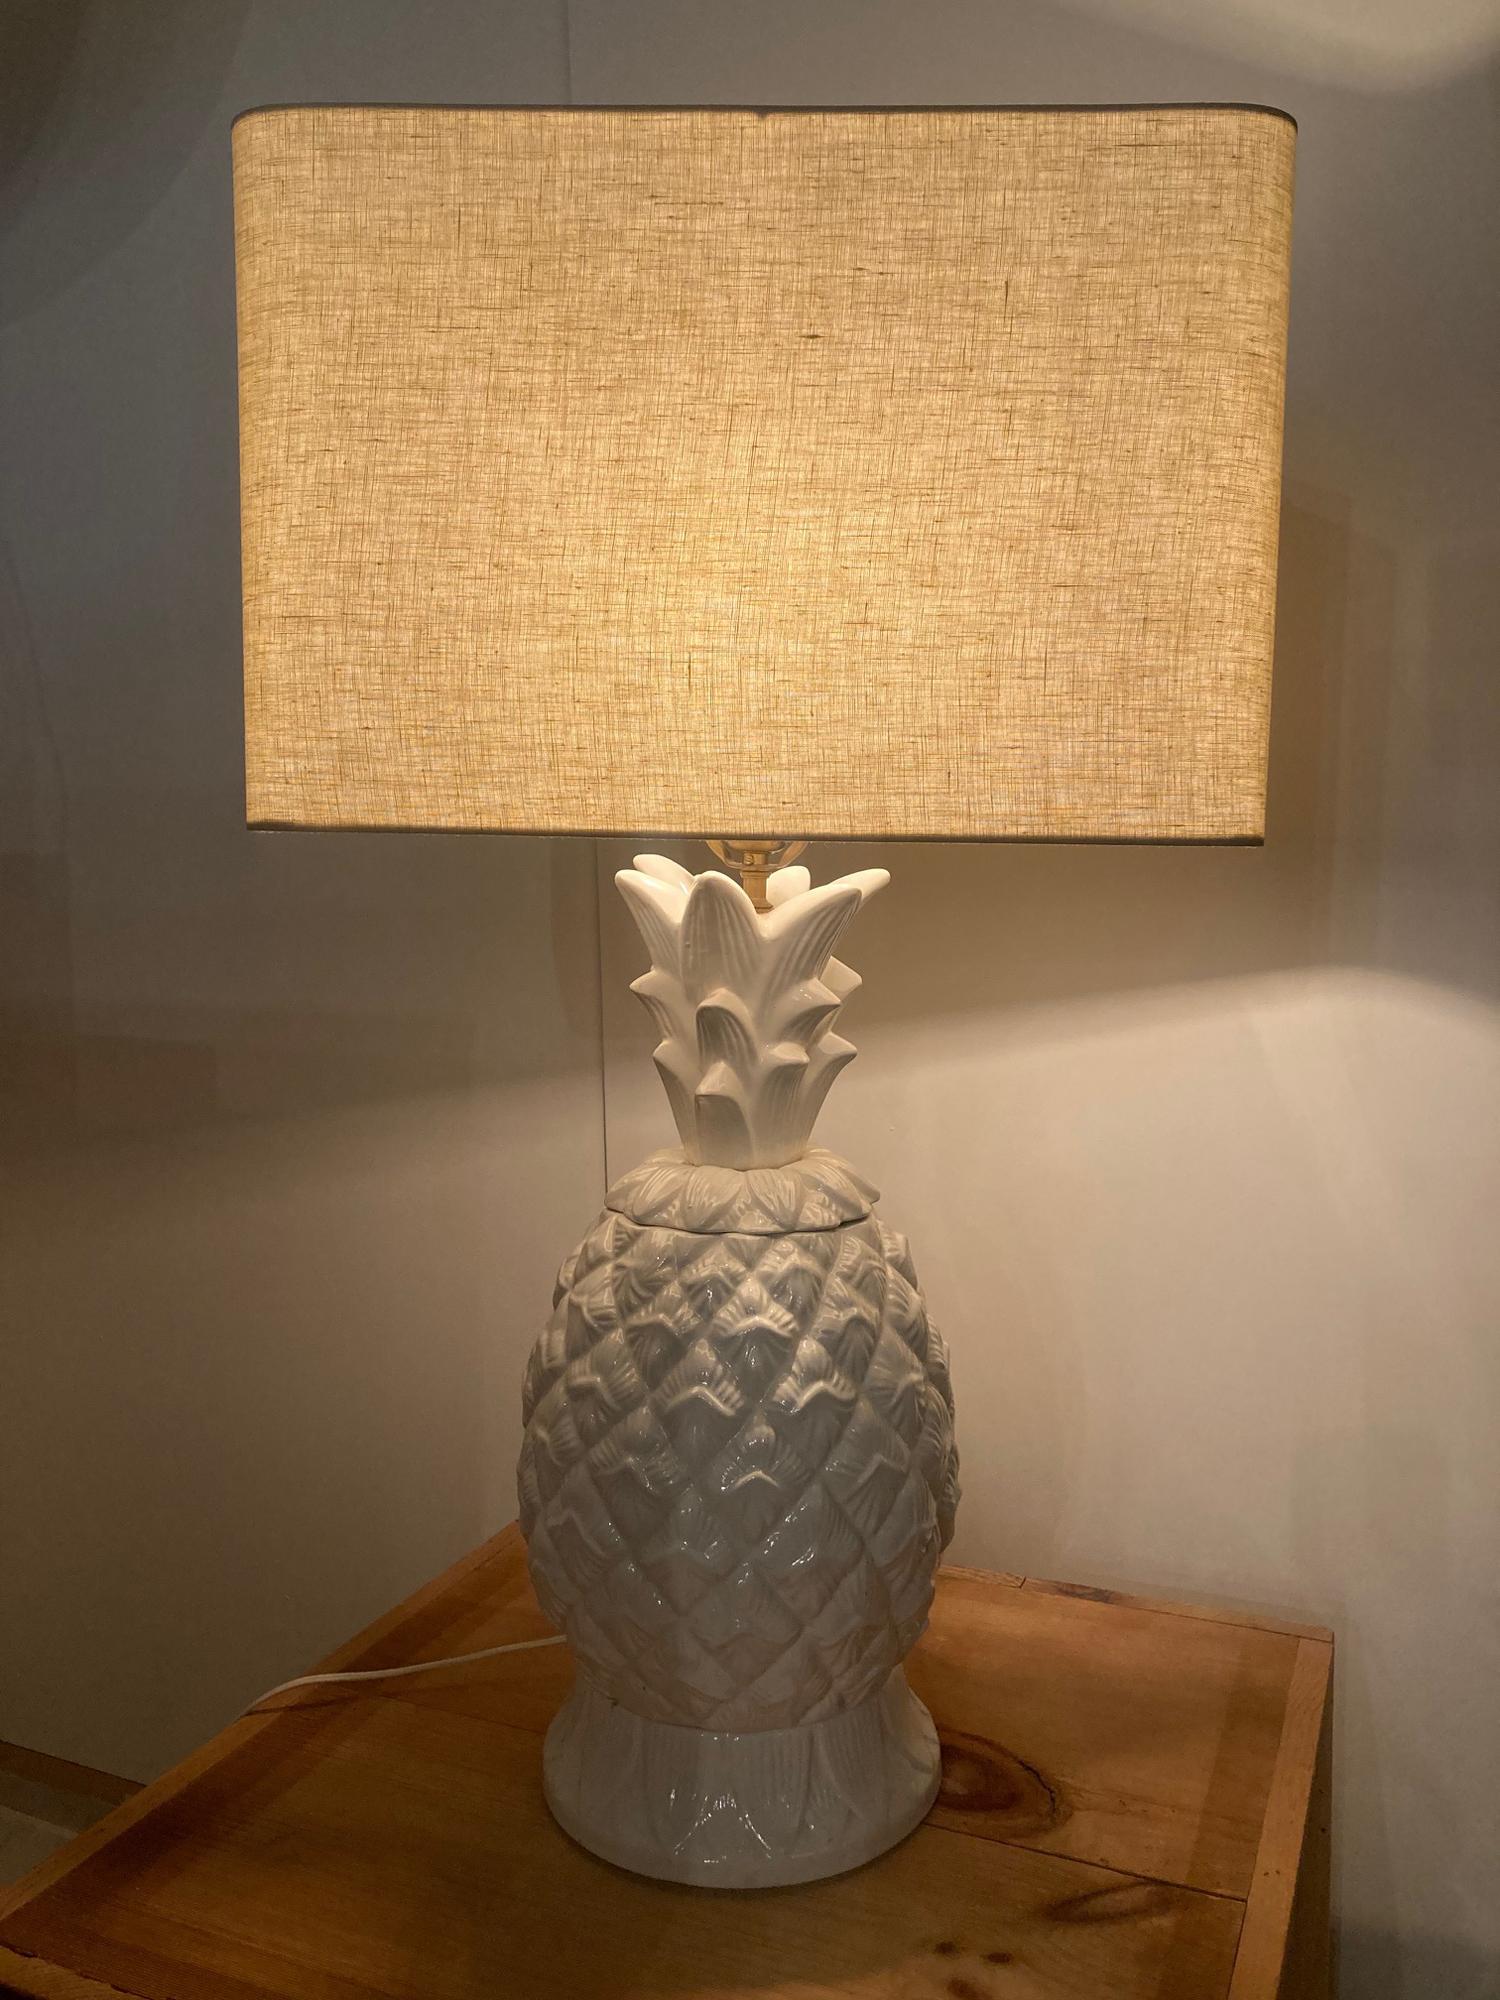 Lampe de table à facettes en céramique vintage des années 1970. 

Cette lampe de table en forme d'ananas apportera une touche de glamour hollywoodien à votre appartement élégant. La base en céramique dans une douce glaçure blanche scintille à la